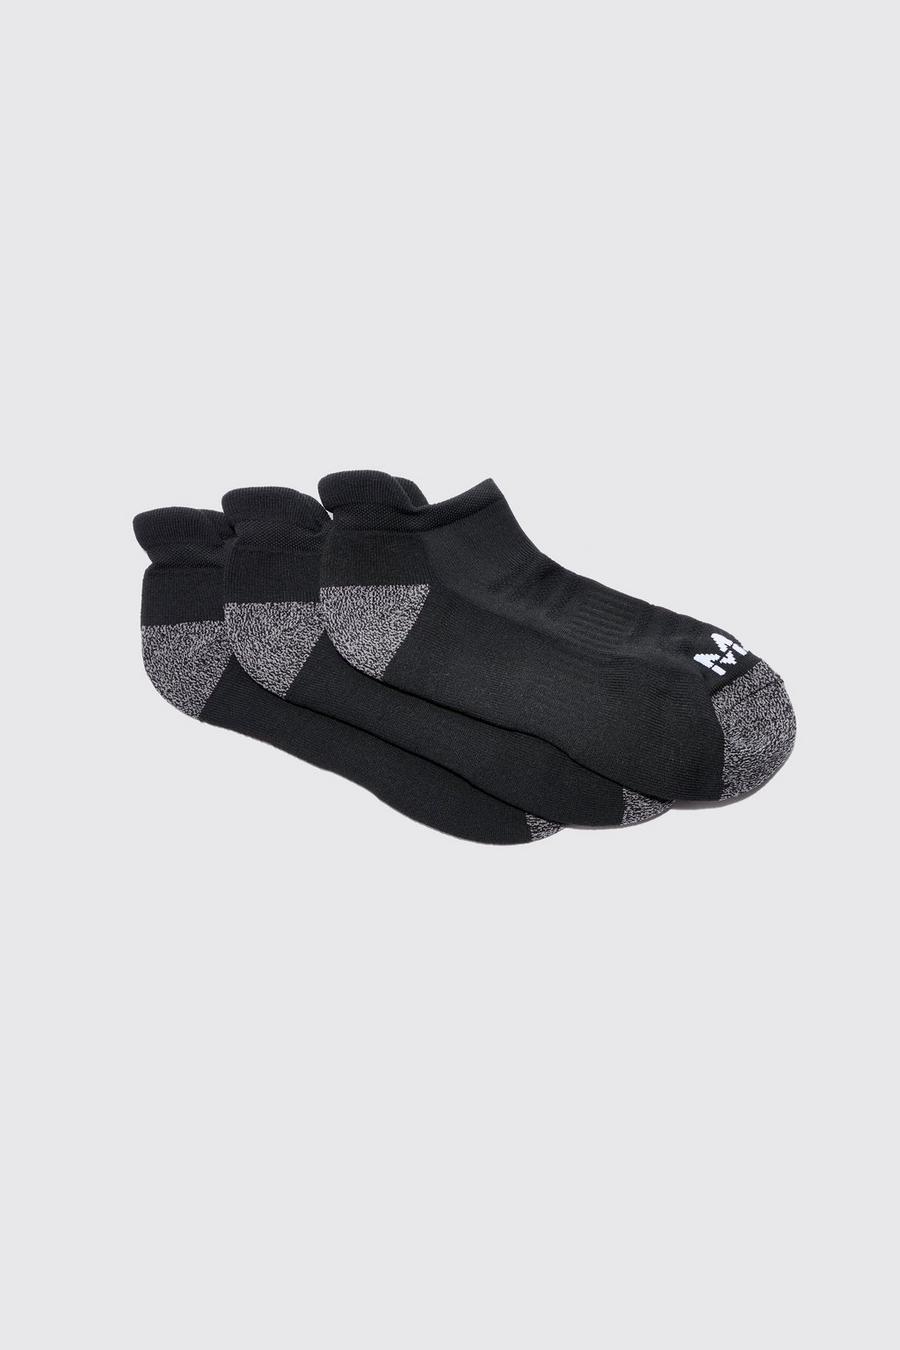 Pack de 3 pares de calcetines MAN Active acolchados, Black image number 1